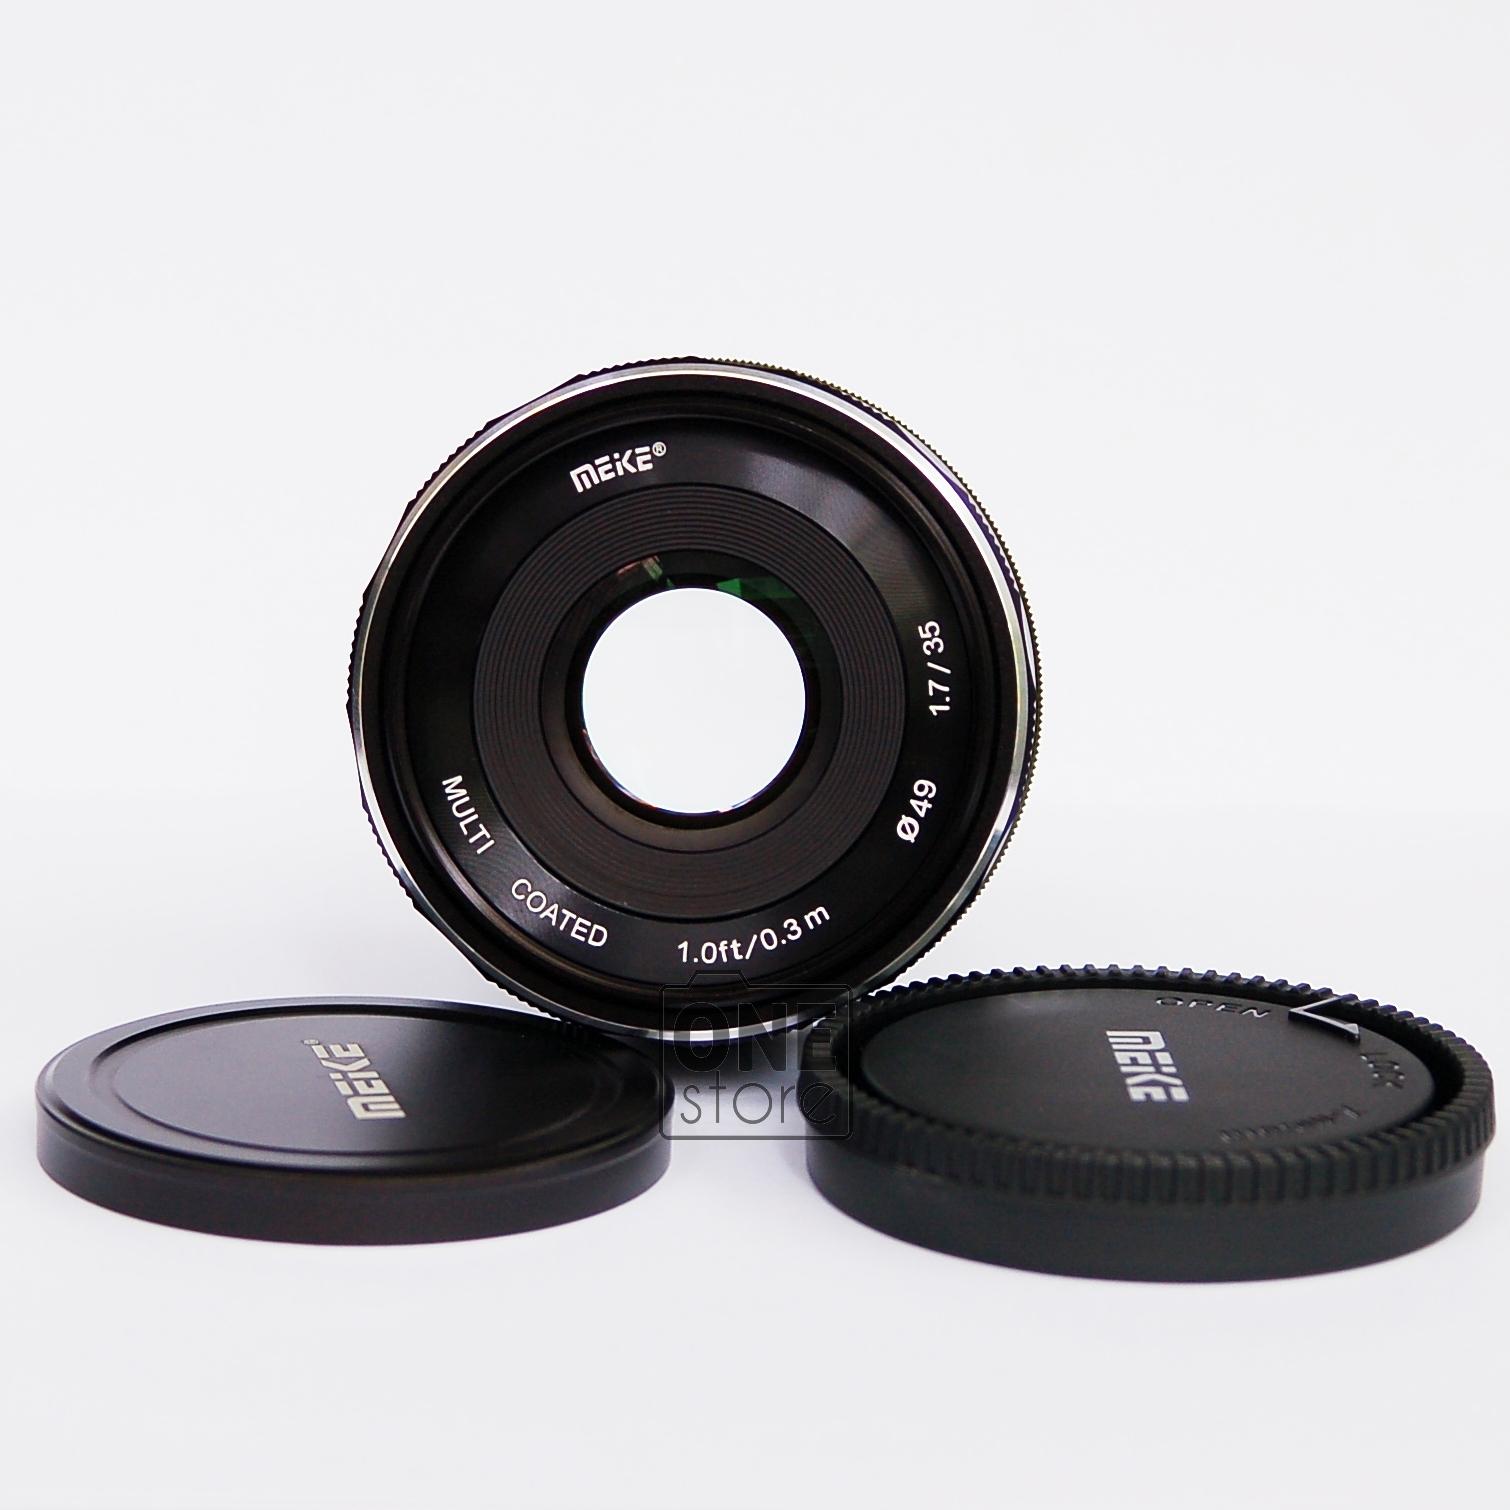 Ống kính Meike 35mm F1.7 cho máy ảnh Fuji (lấy nét thủ công)